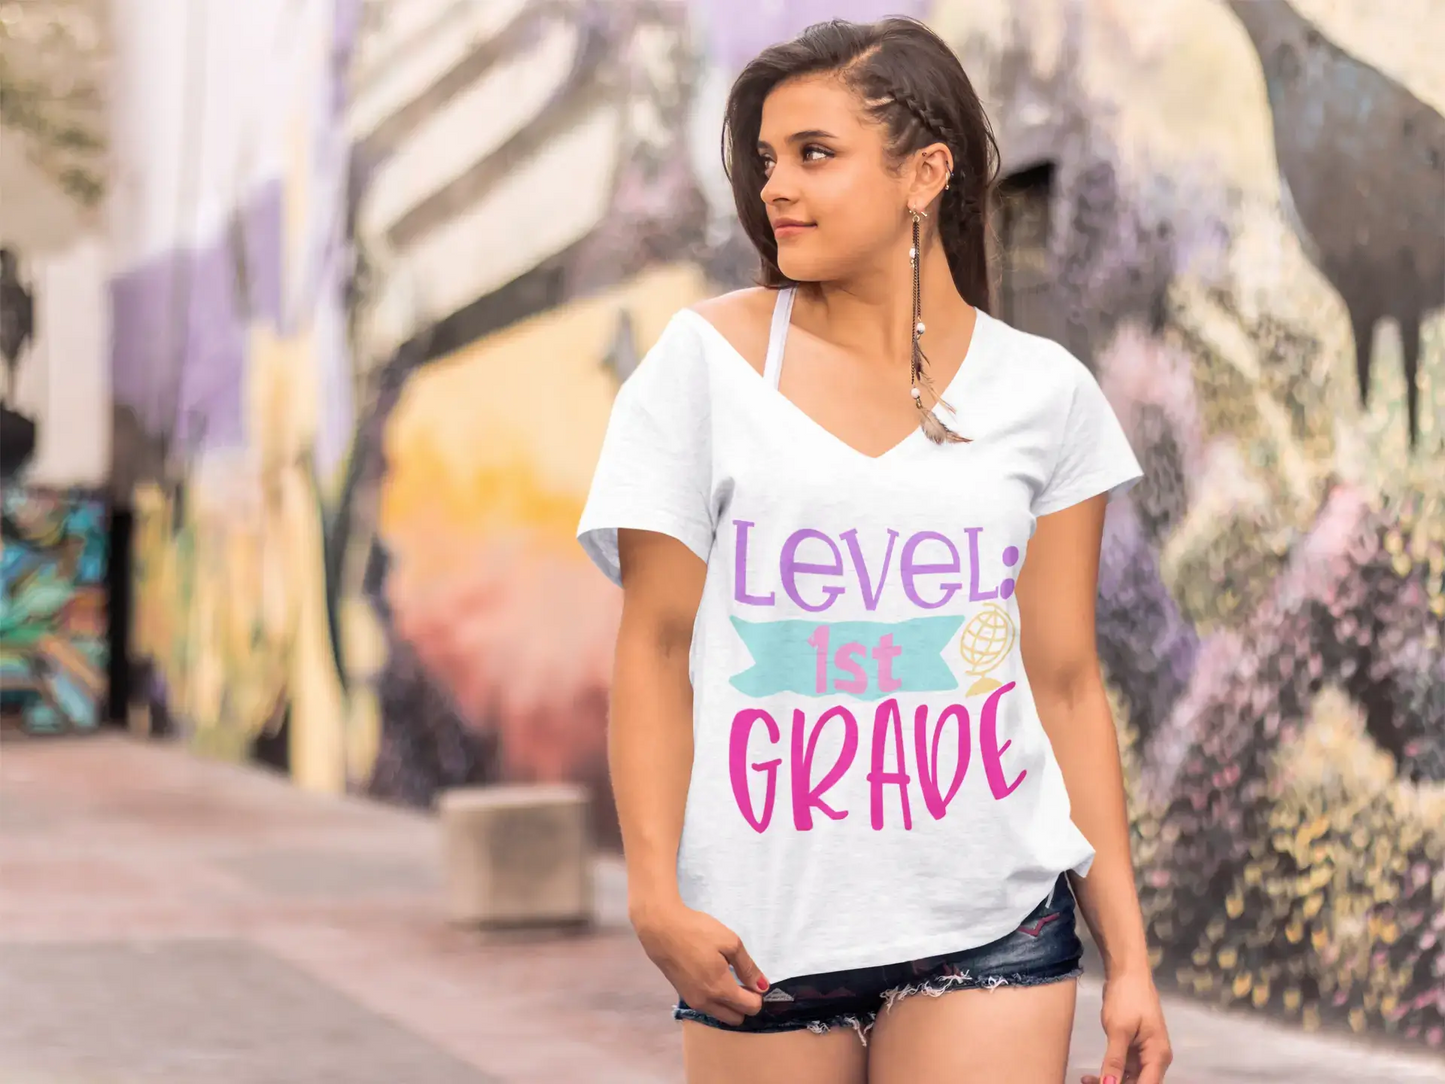 ULTRABASIC Women's T-Shirt Level 1st Grade - Short Sleeve Tee Shirt Tops